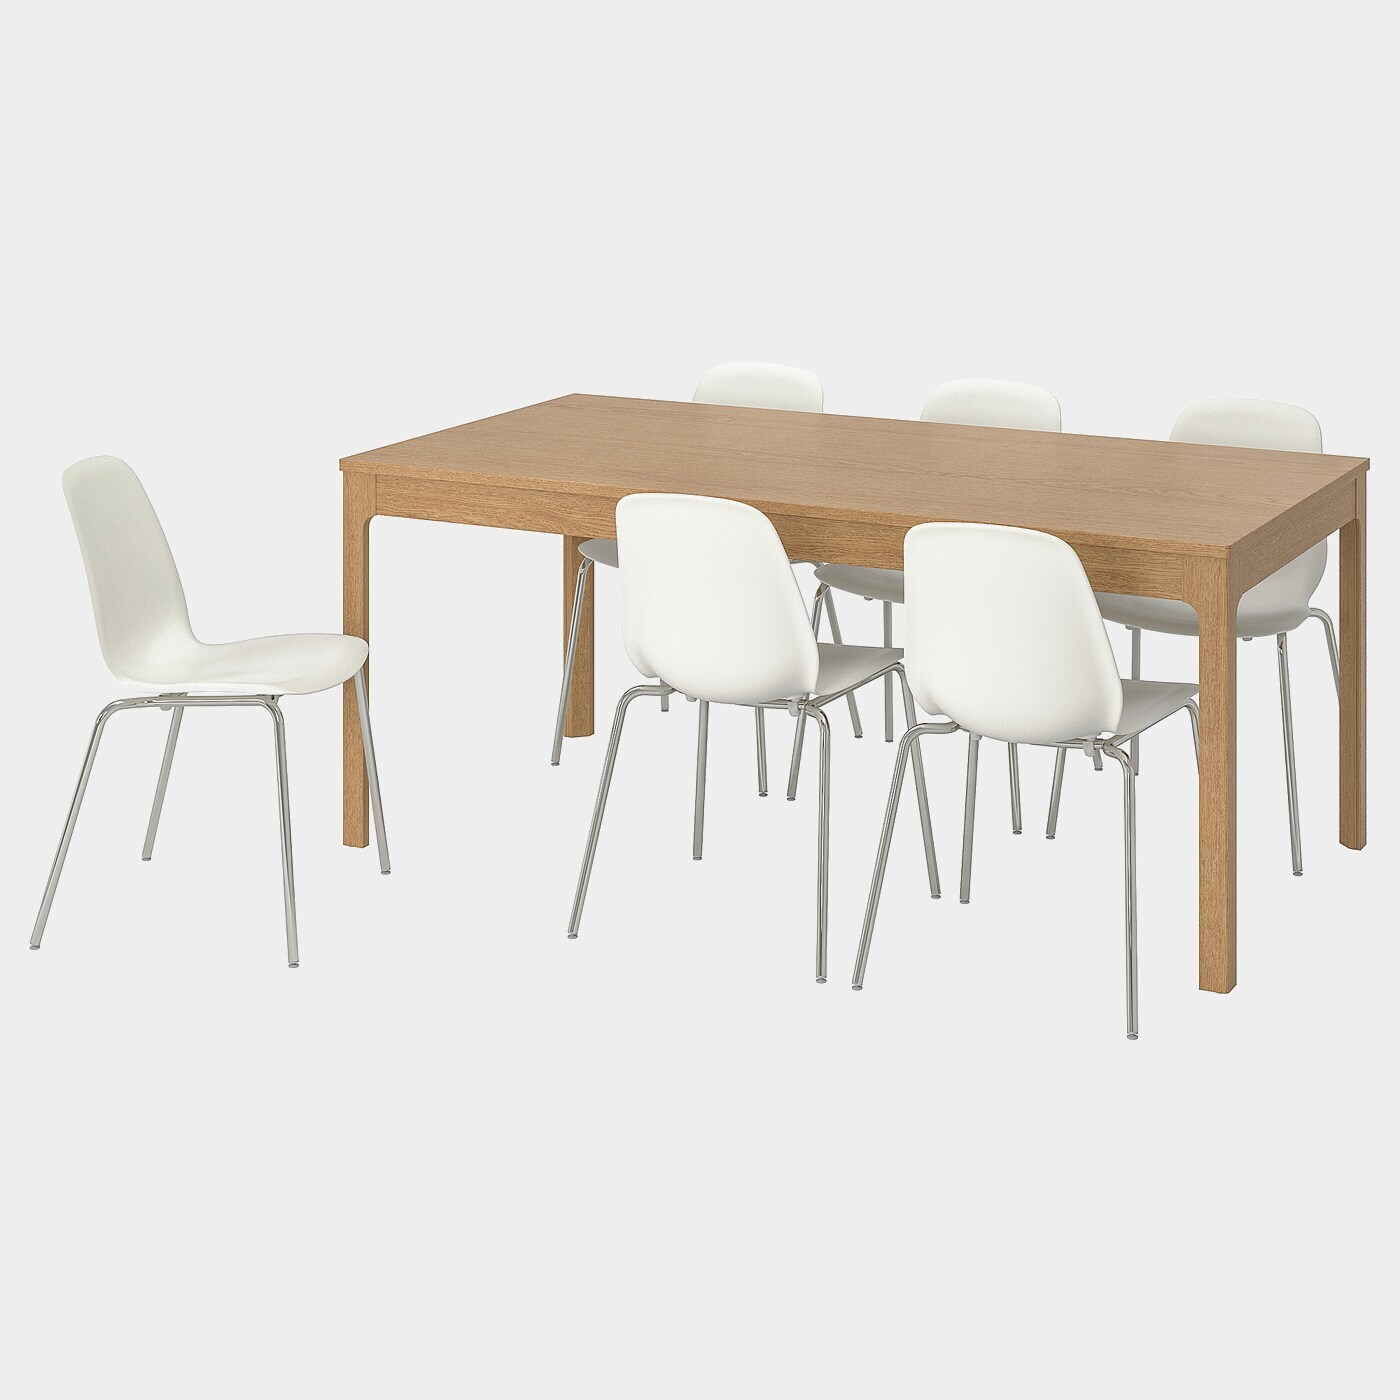 EKEDALEN / LEIFARNE Tisch und 6 Stühle  - Essplatzgruppe - Möbel Ideen für dein Zuhause von Home Trends. Möbel Trends von Social Media Influencer für dein Skandi Zuhause.